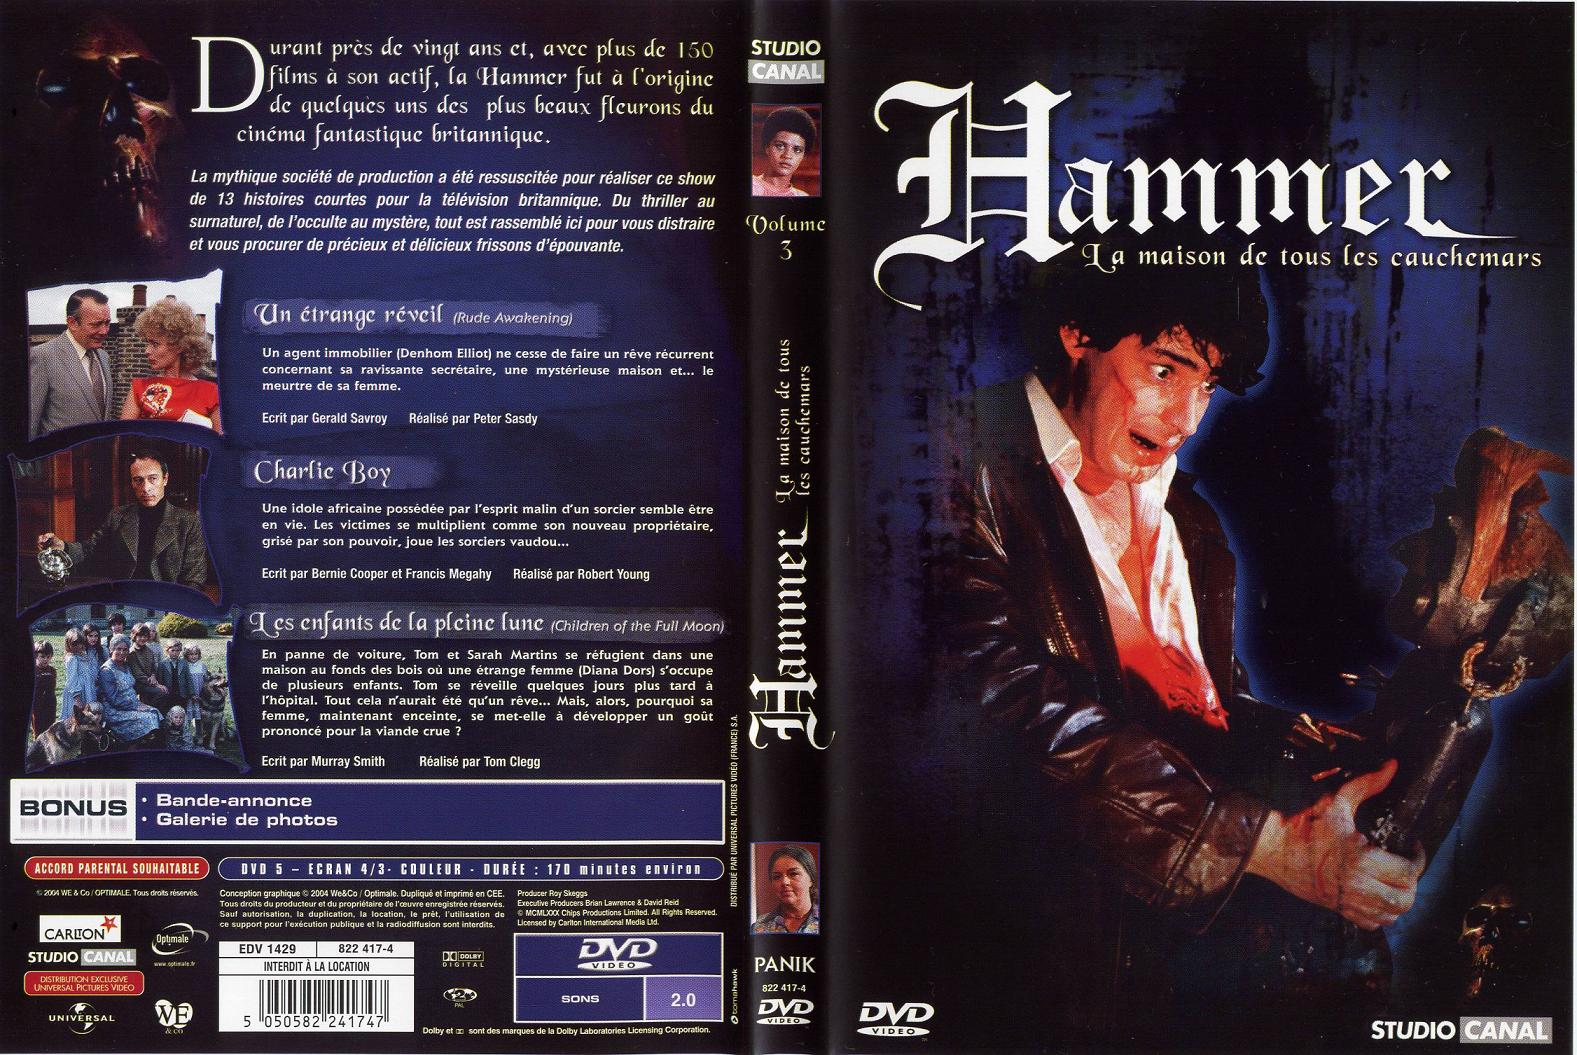 Jaquette DVD Hammer la maison de tous les cauchemars vol 3